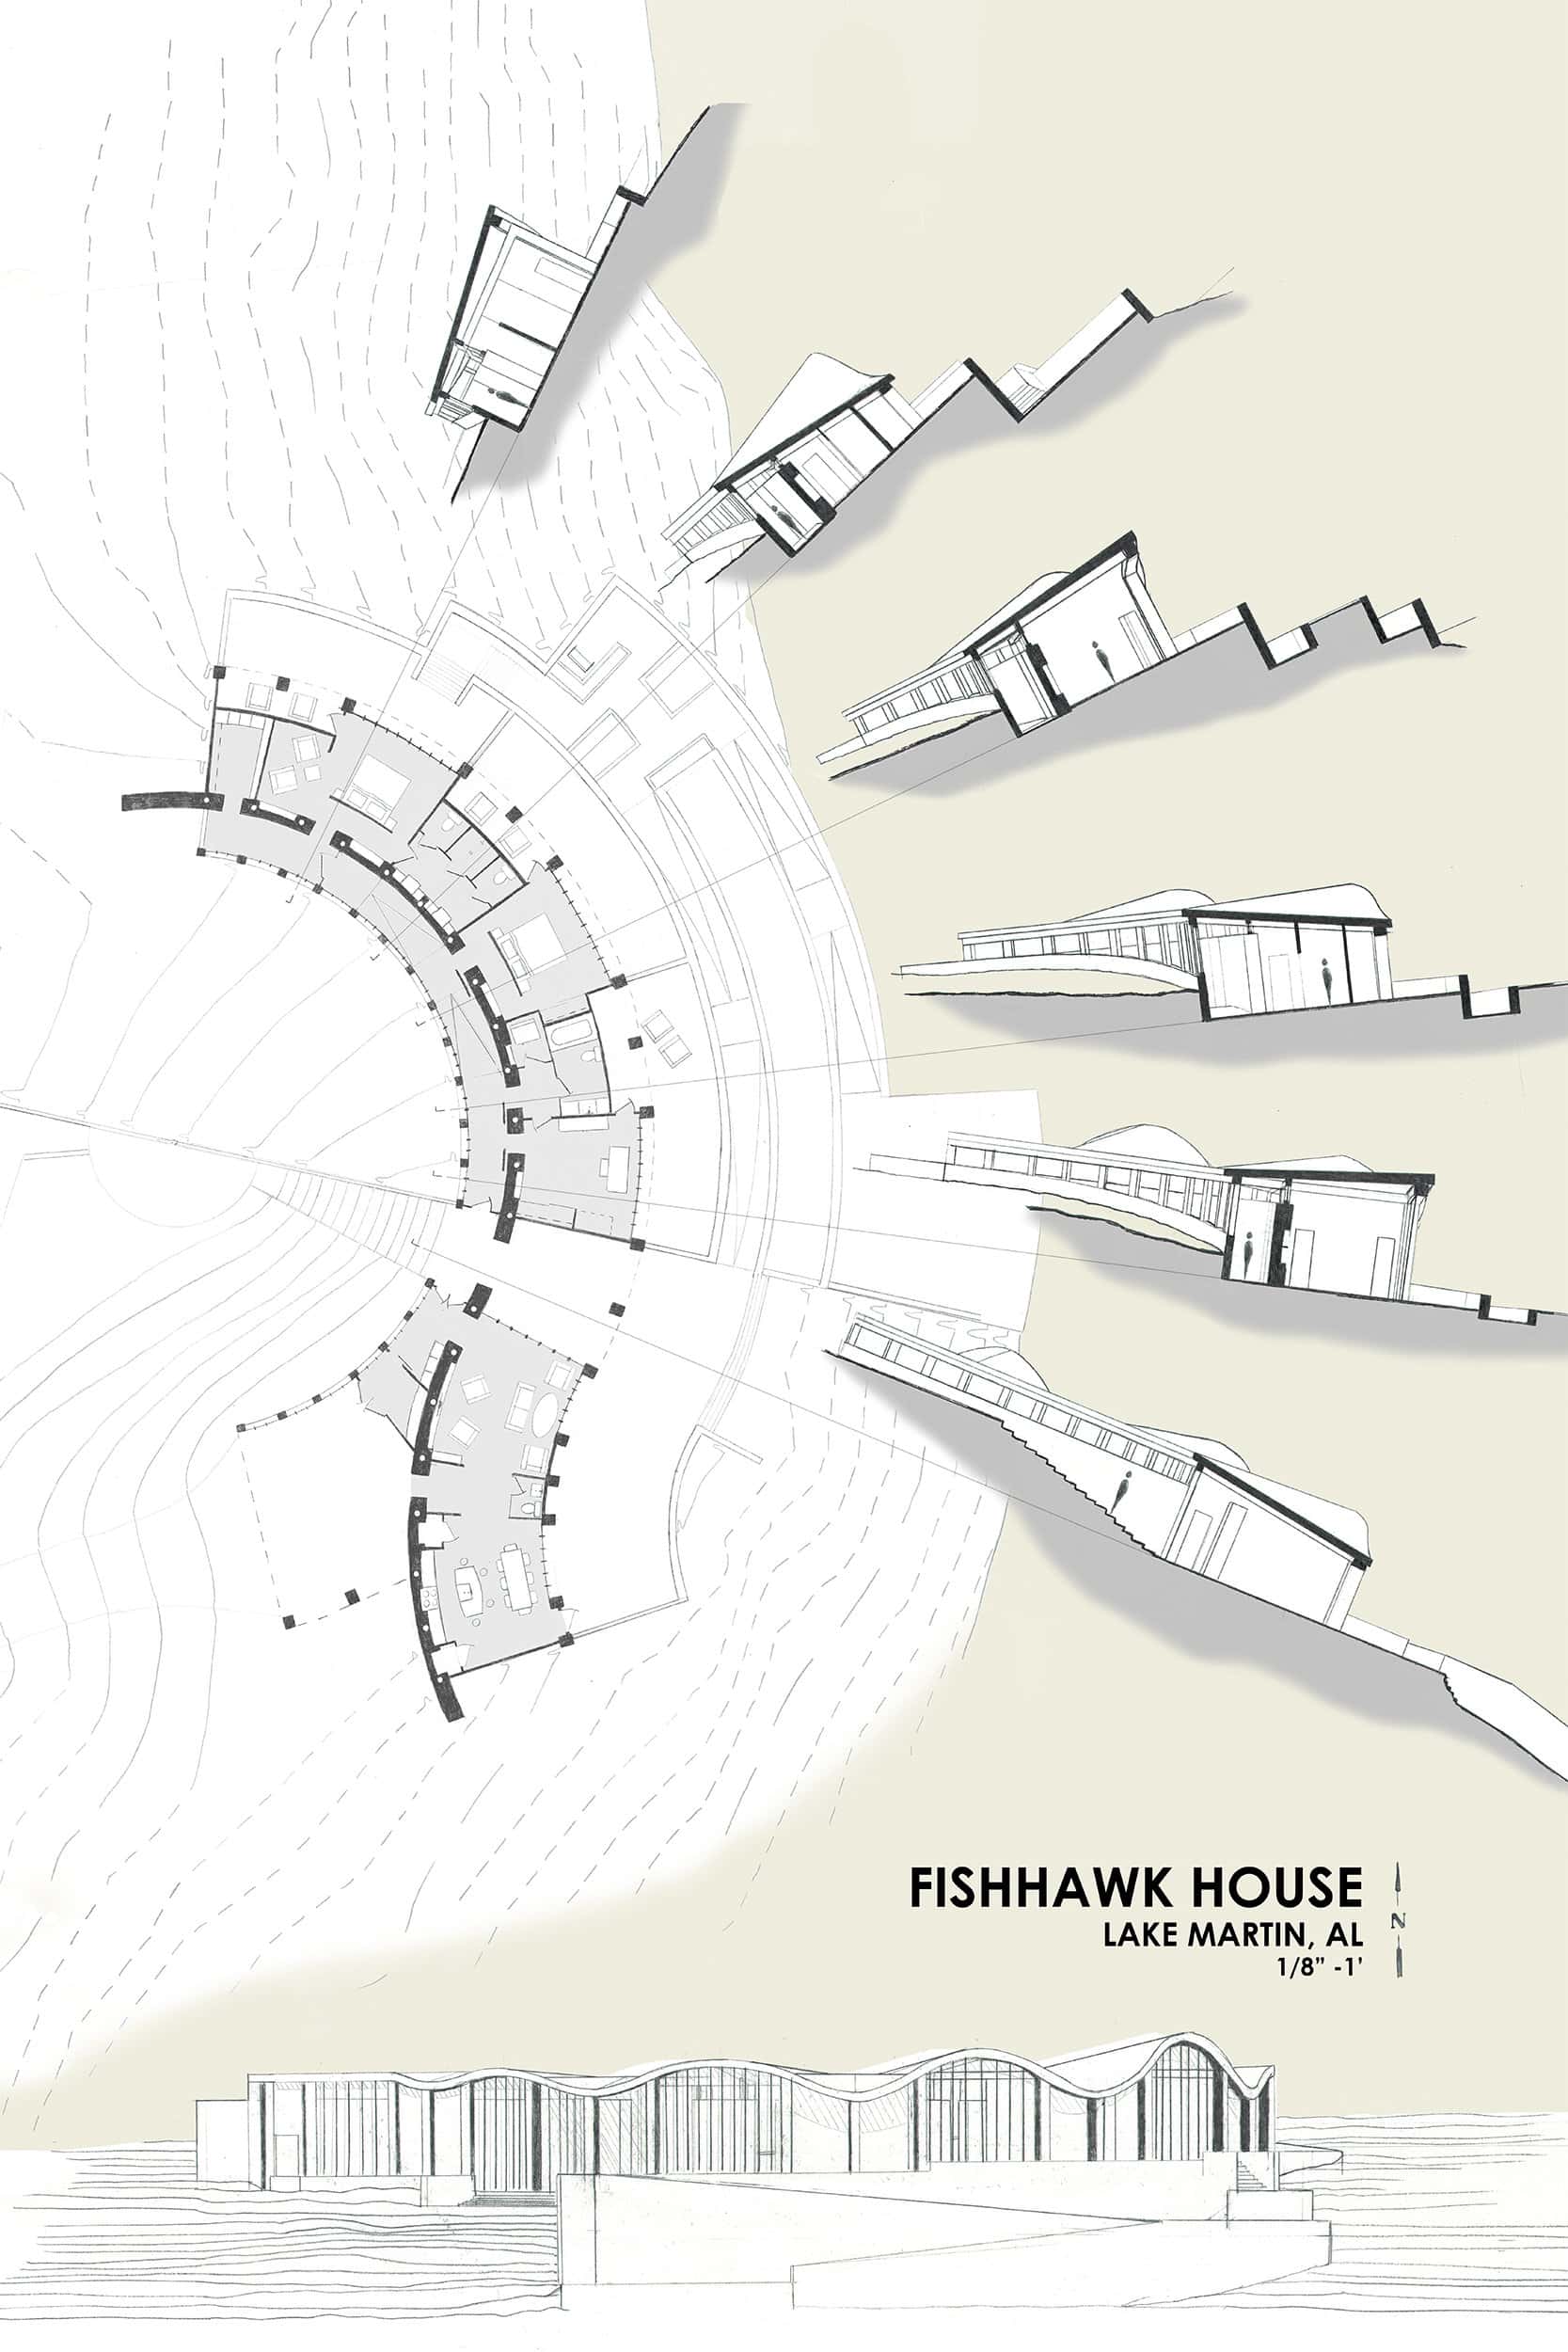 FishHawk Lakehouse design by Jeremy Daniel